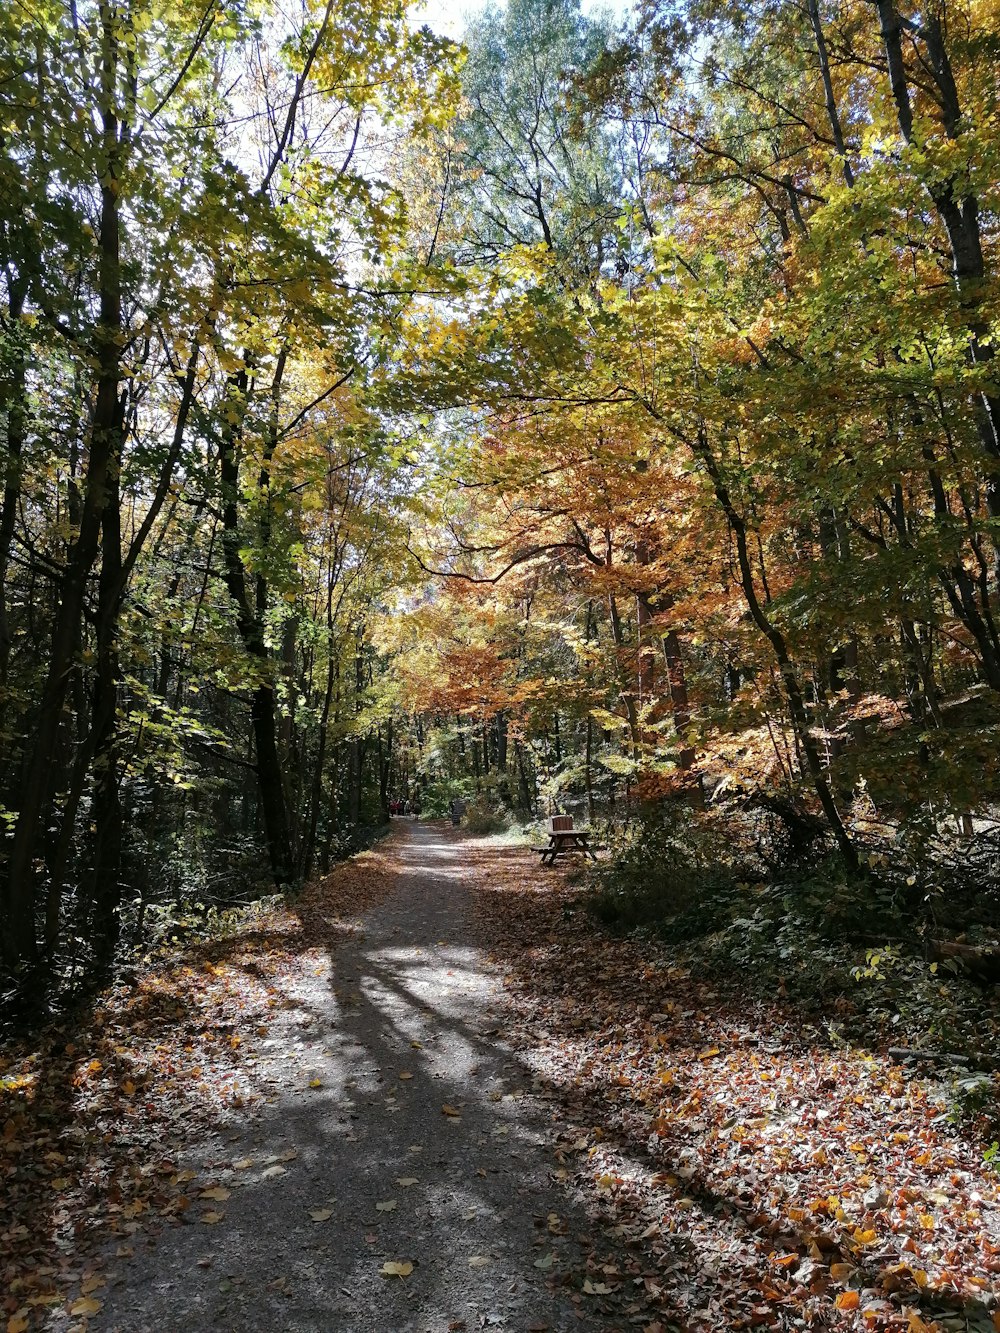 Un camino de tierra rodeado de árboles y hojas